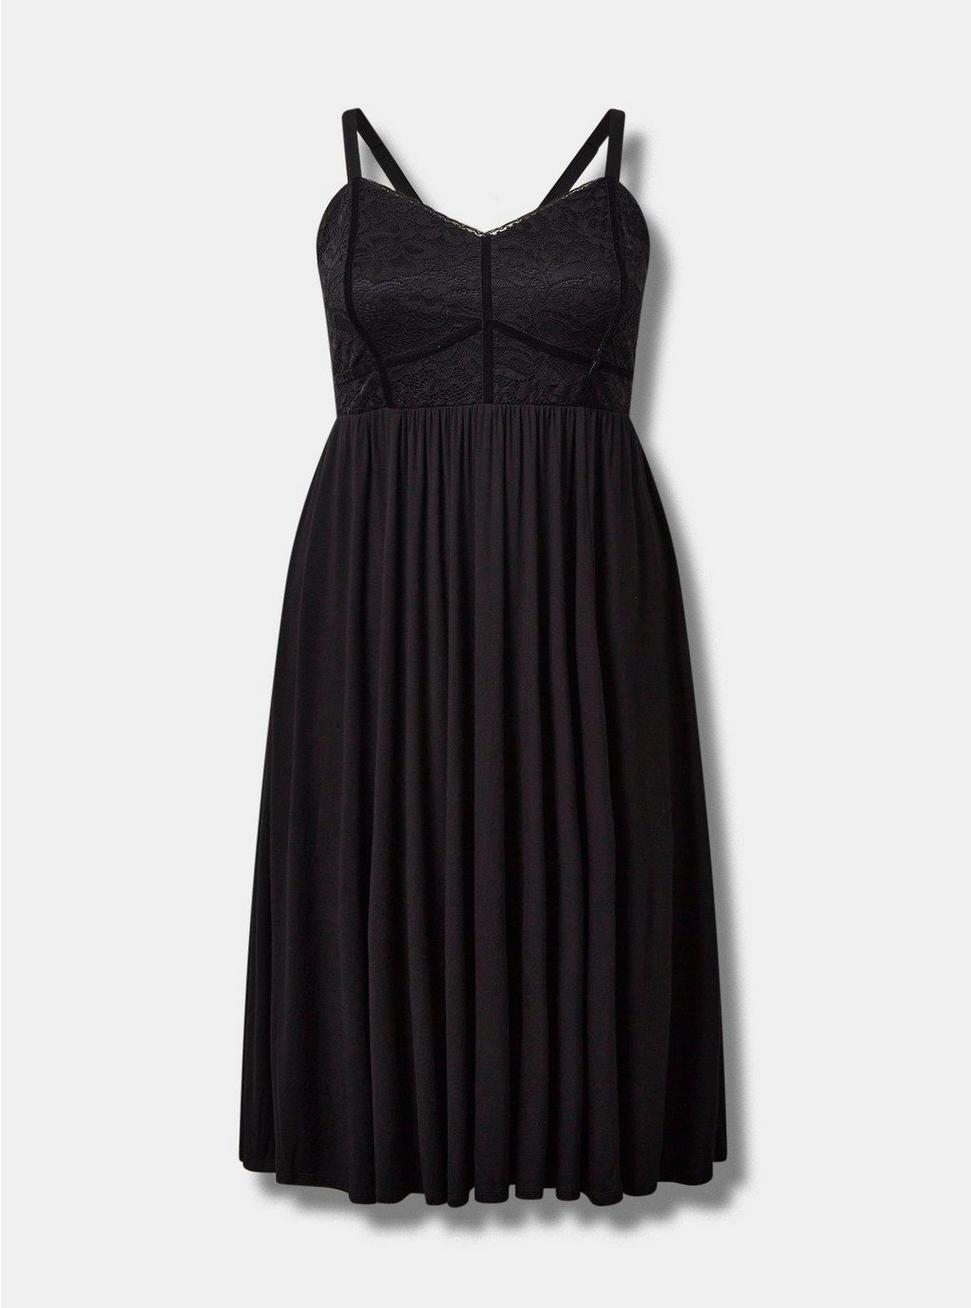 Midi Super Soft Lace Cami Bustier Dress, DEEP BLACK, hi-res